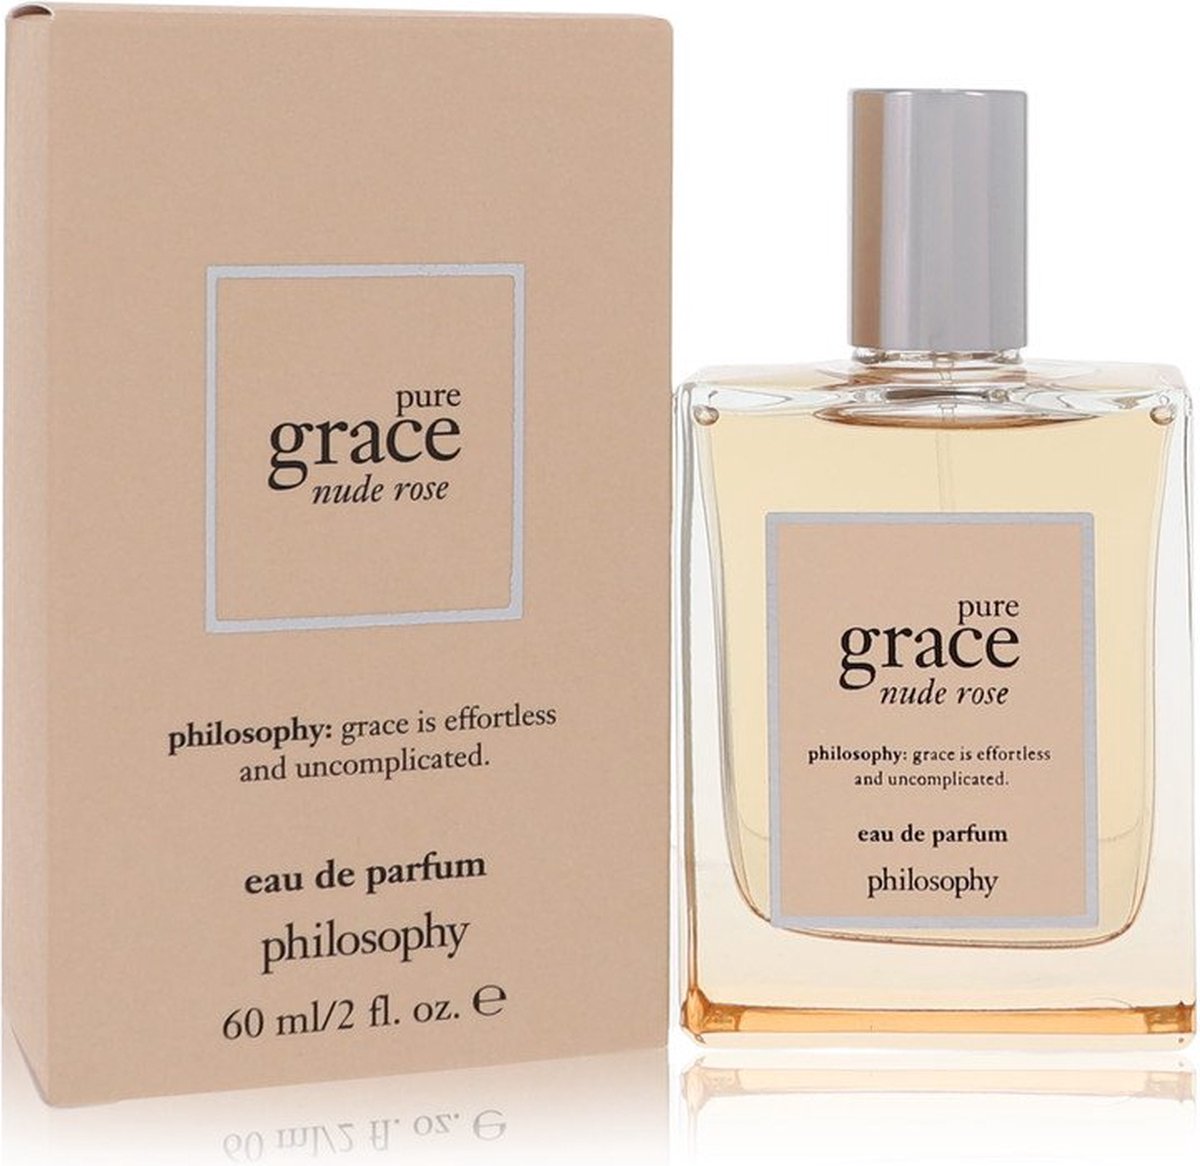 Philosophy - Pure Grace Nude Rose - 60 ml Eau de Parfum